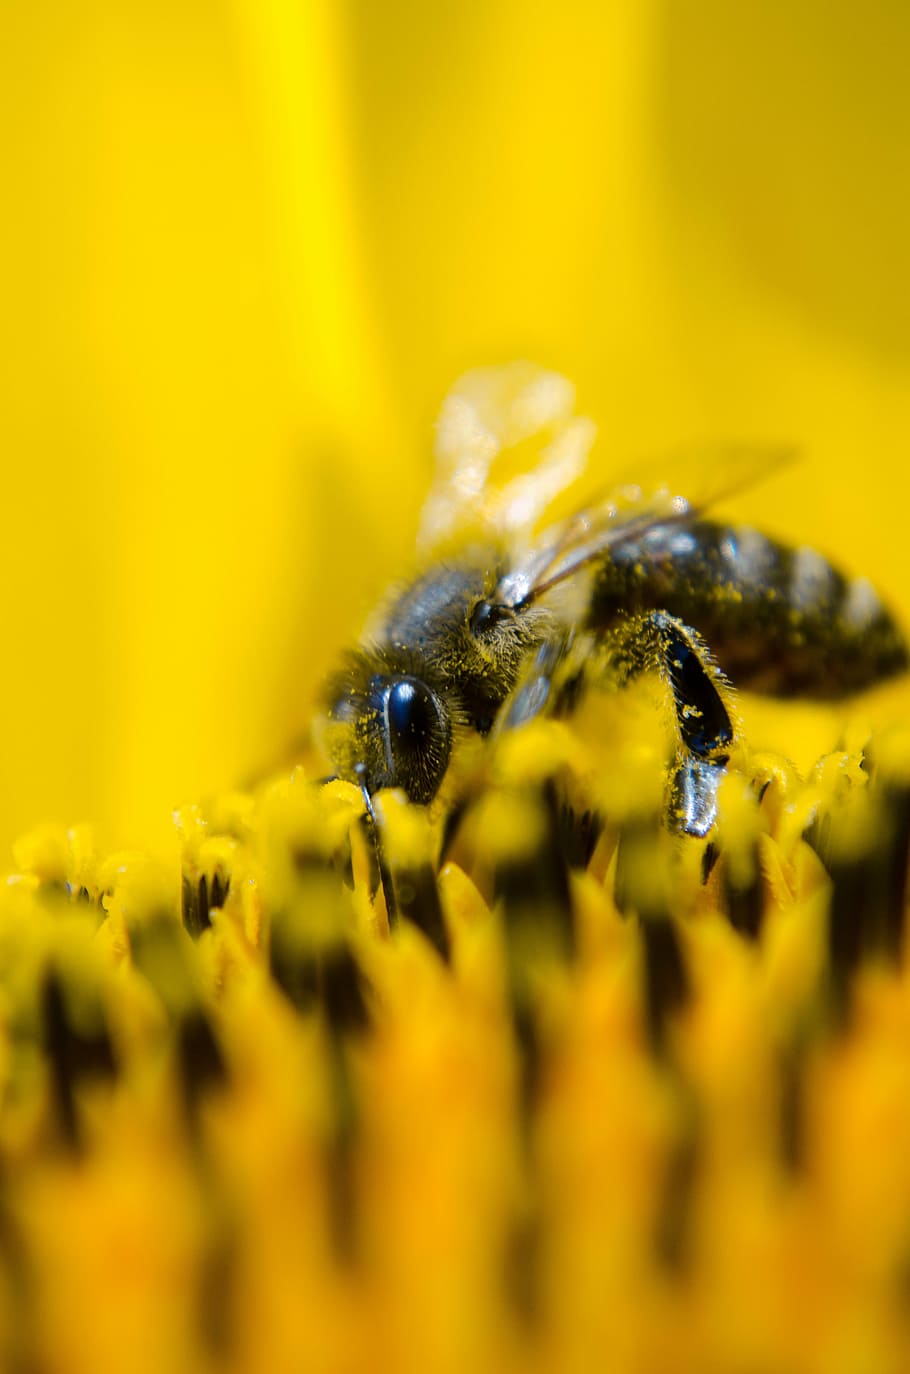 fokus, fotografi fokus, pemolesan lebah, lebah, lebah pengerjaan, alam, bunga matahari, kuning, serbuk sari, makro